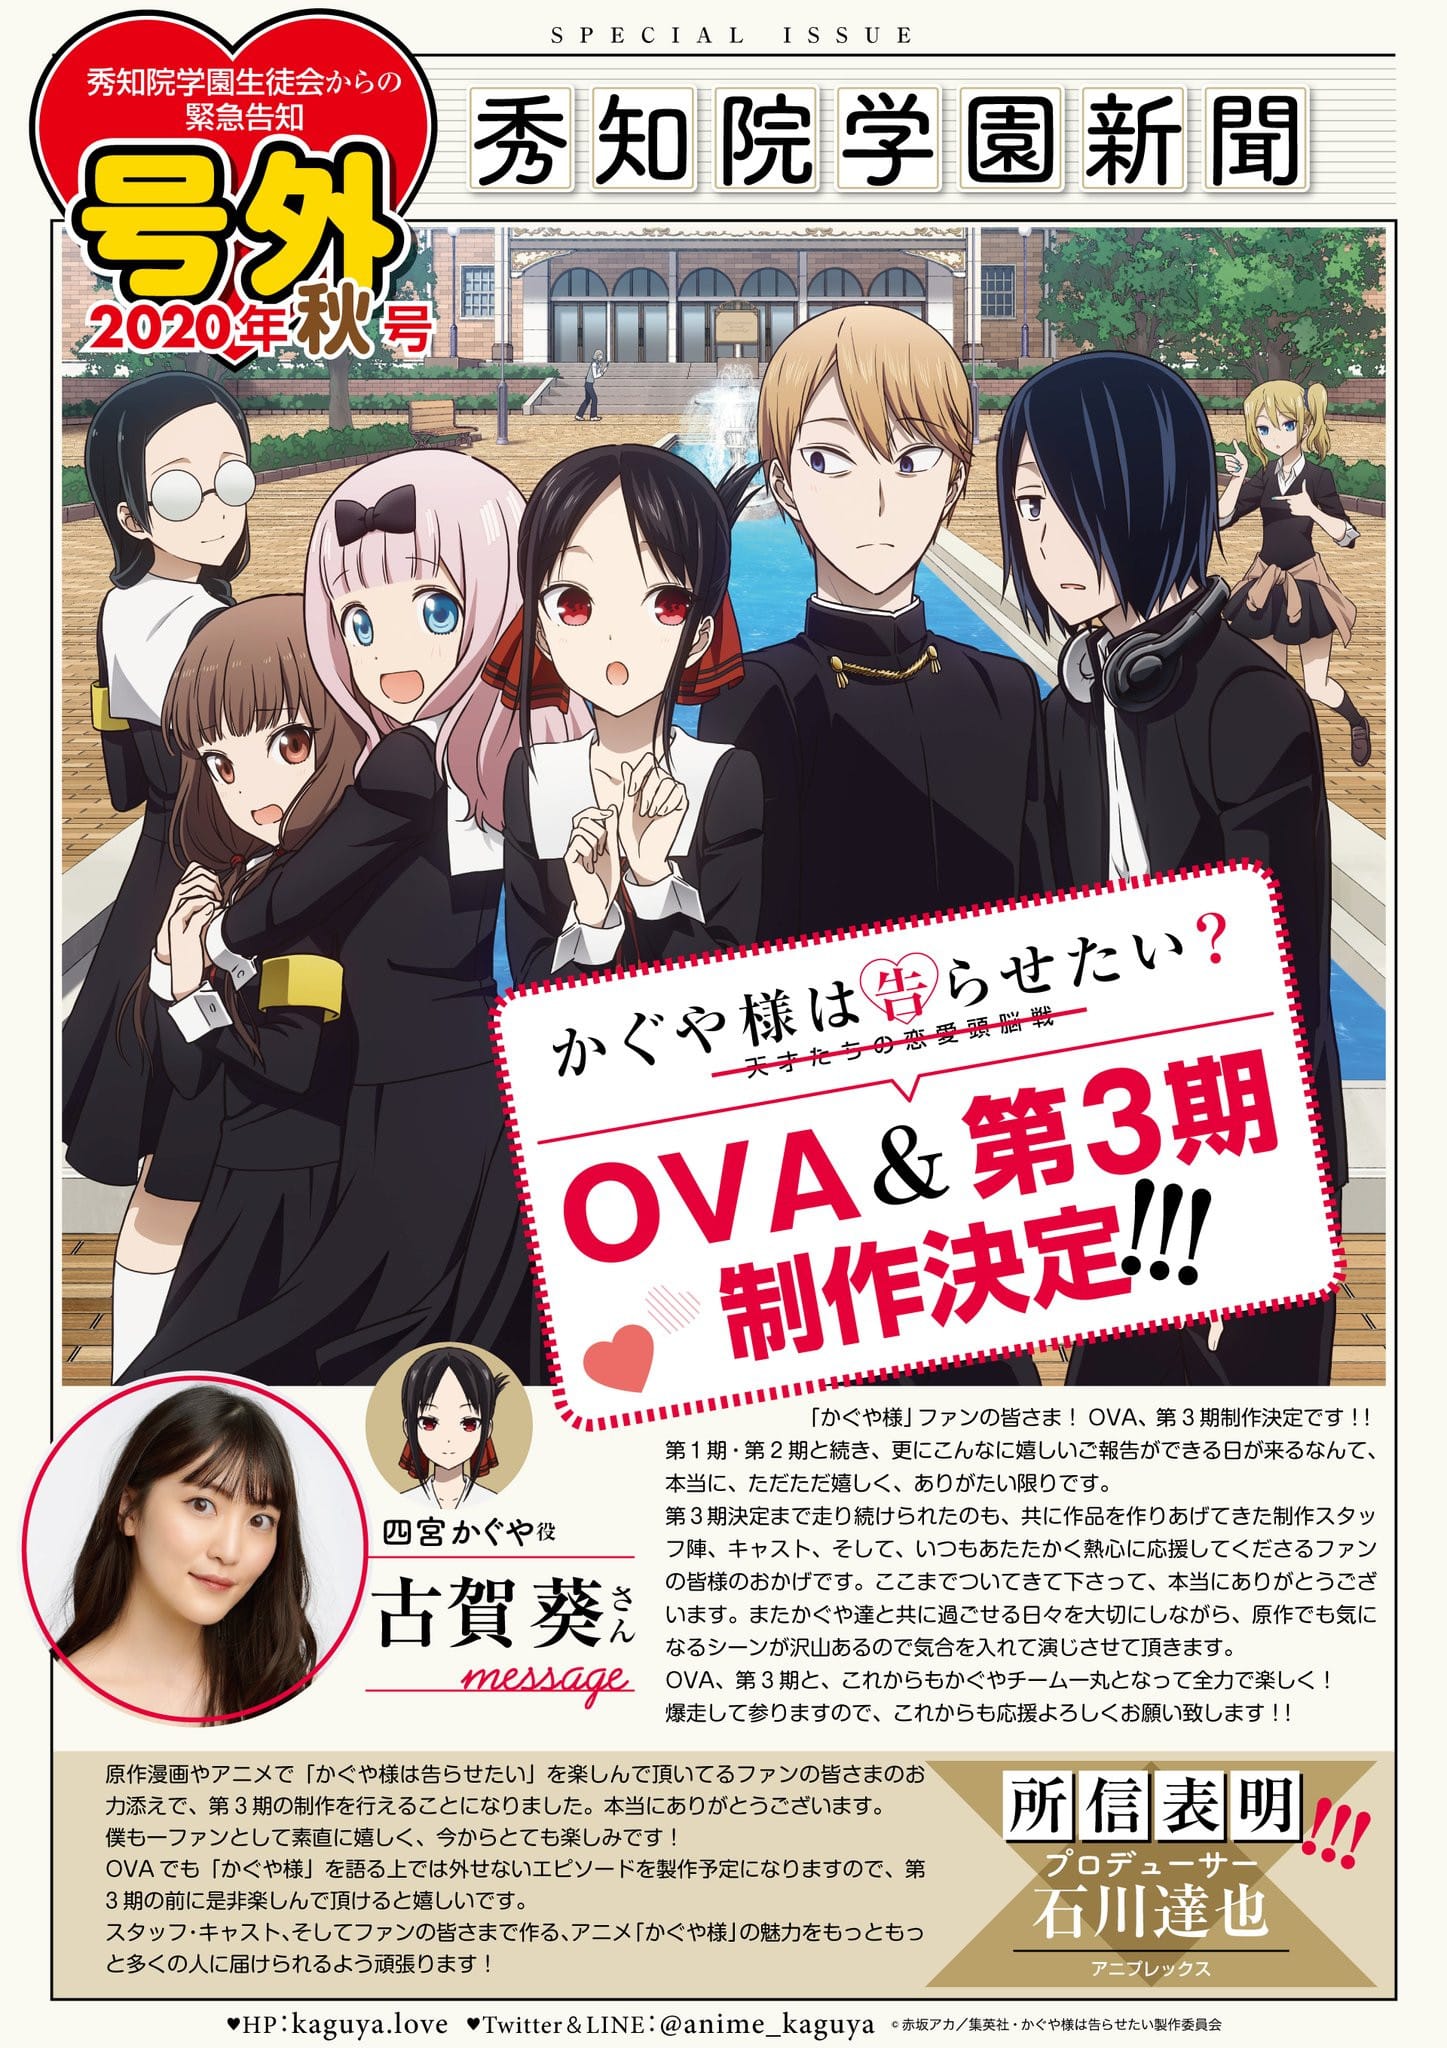 Annonce de anime Kaguya-sama Love is War Saison 3 et OVA